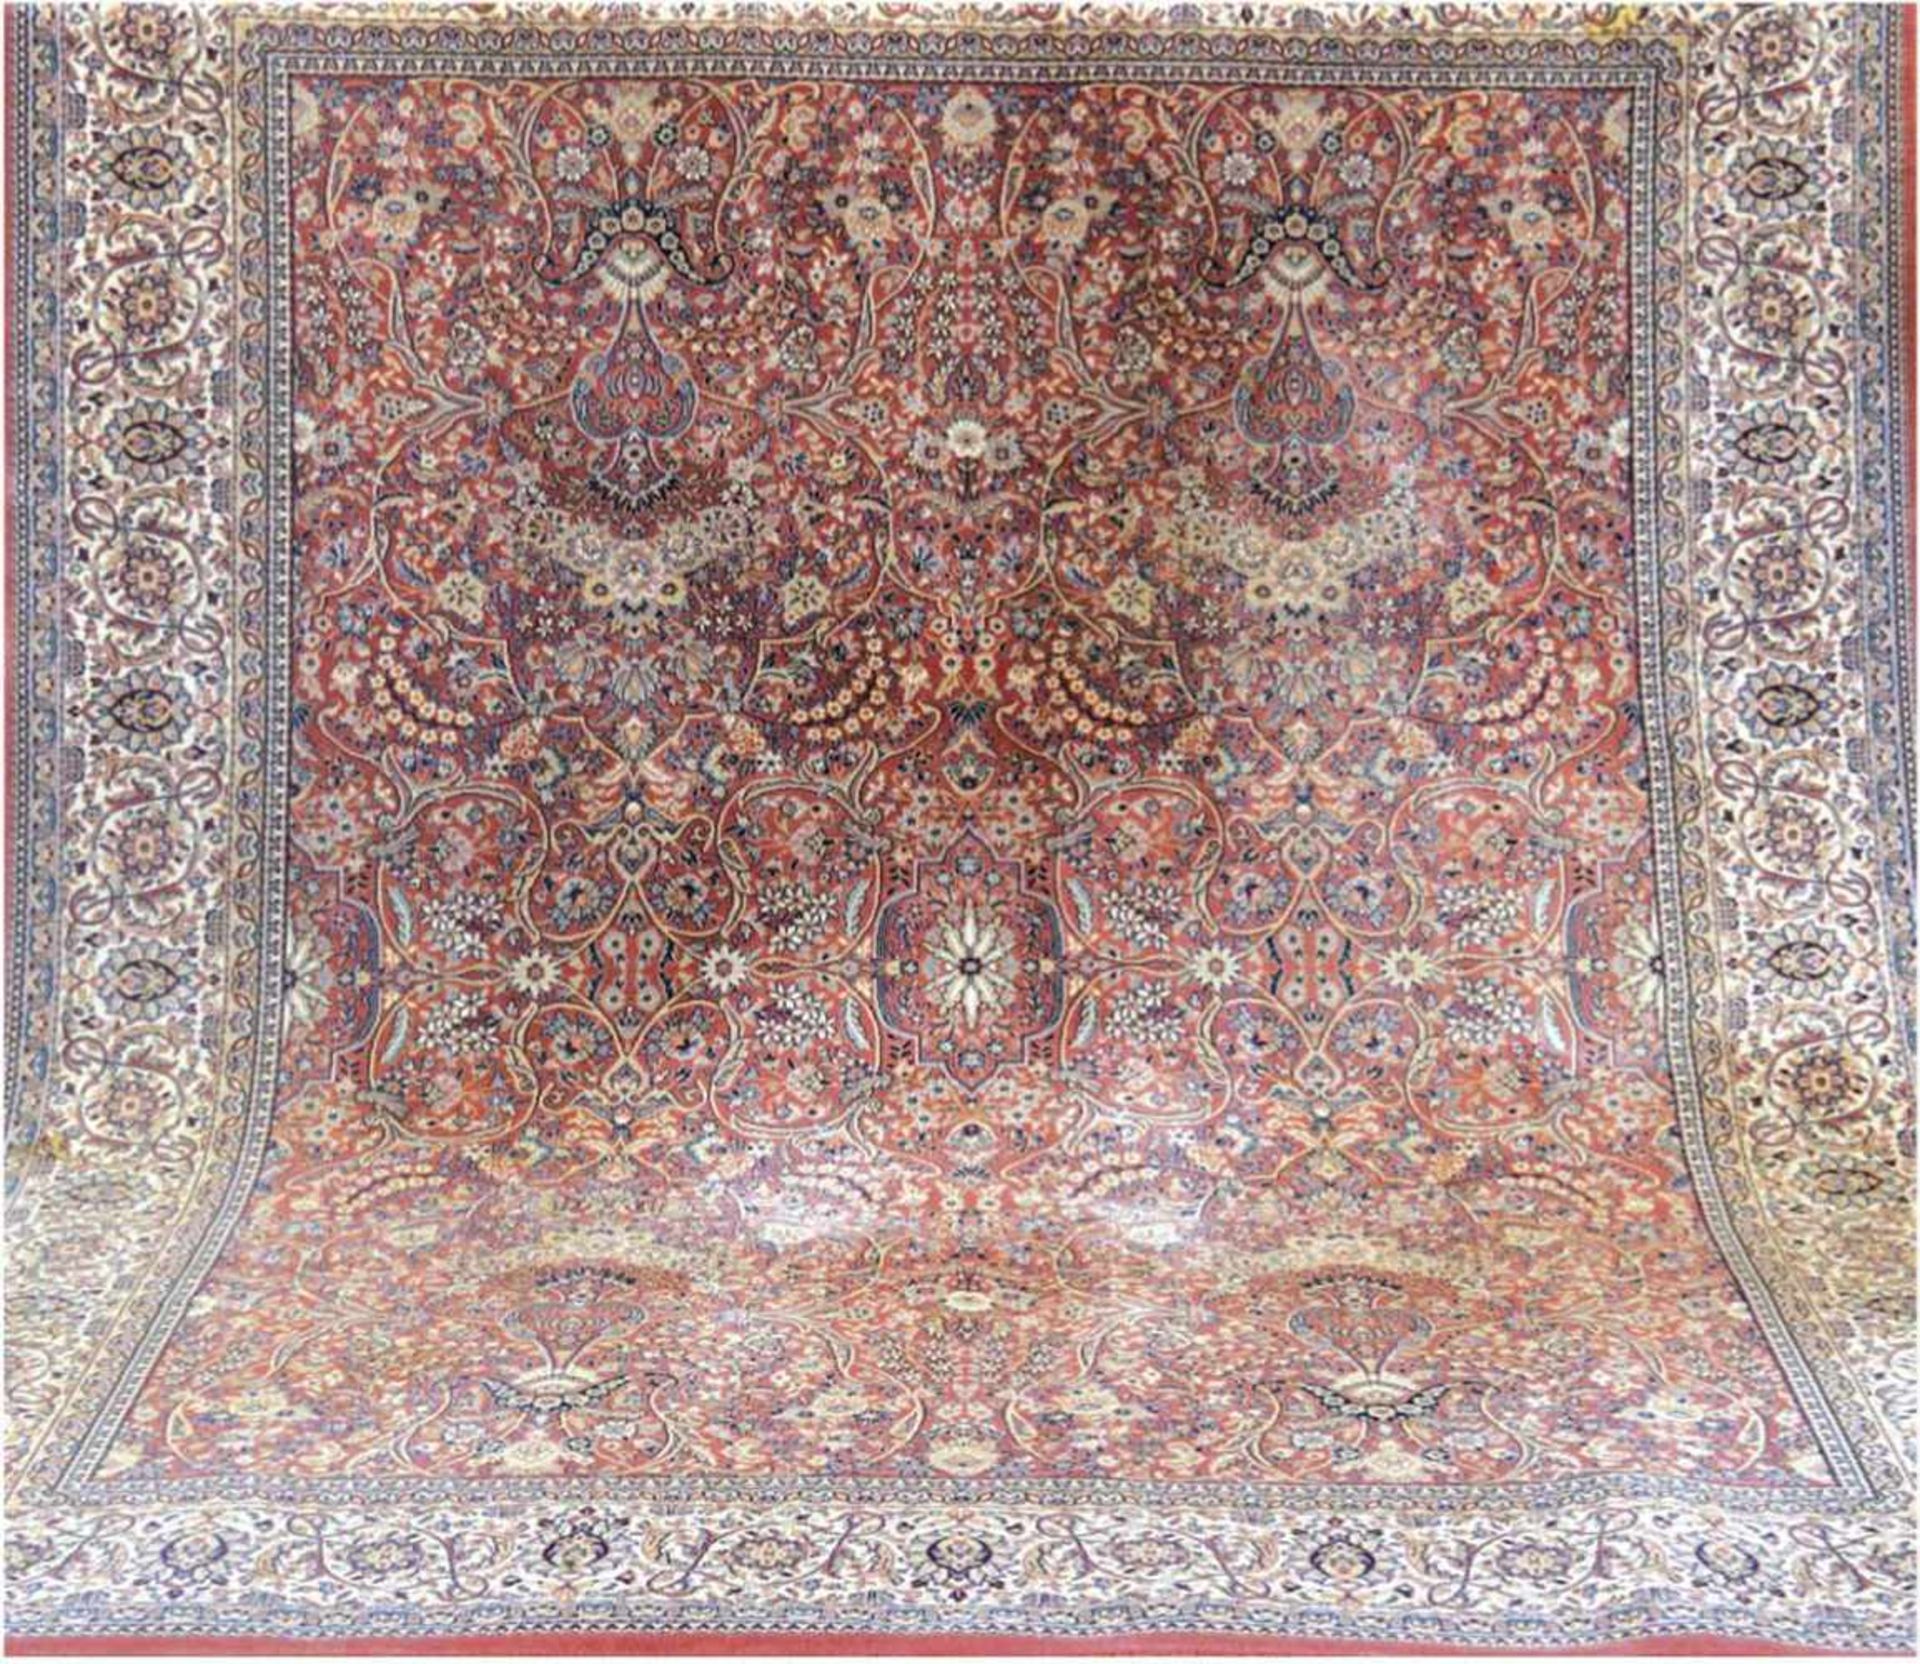 Webteppich, Orient, rotgrundig mit zentralem Medaillon u. floralen Muster, guter Zustand,295x235 cm